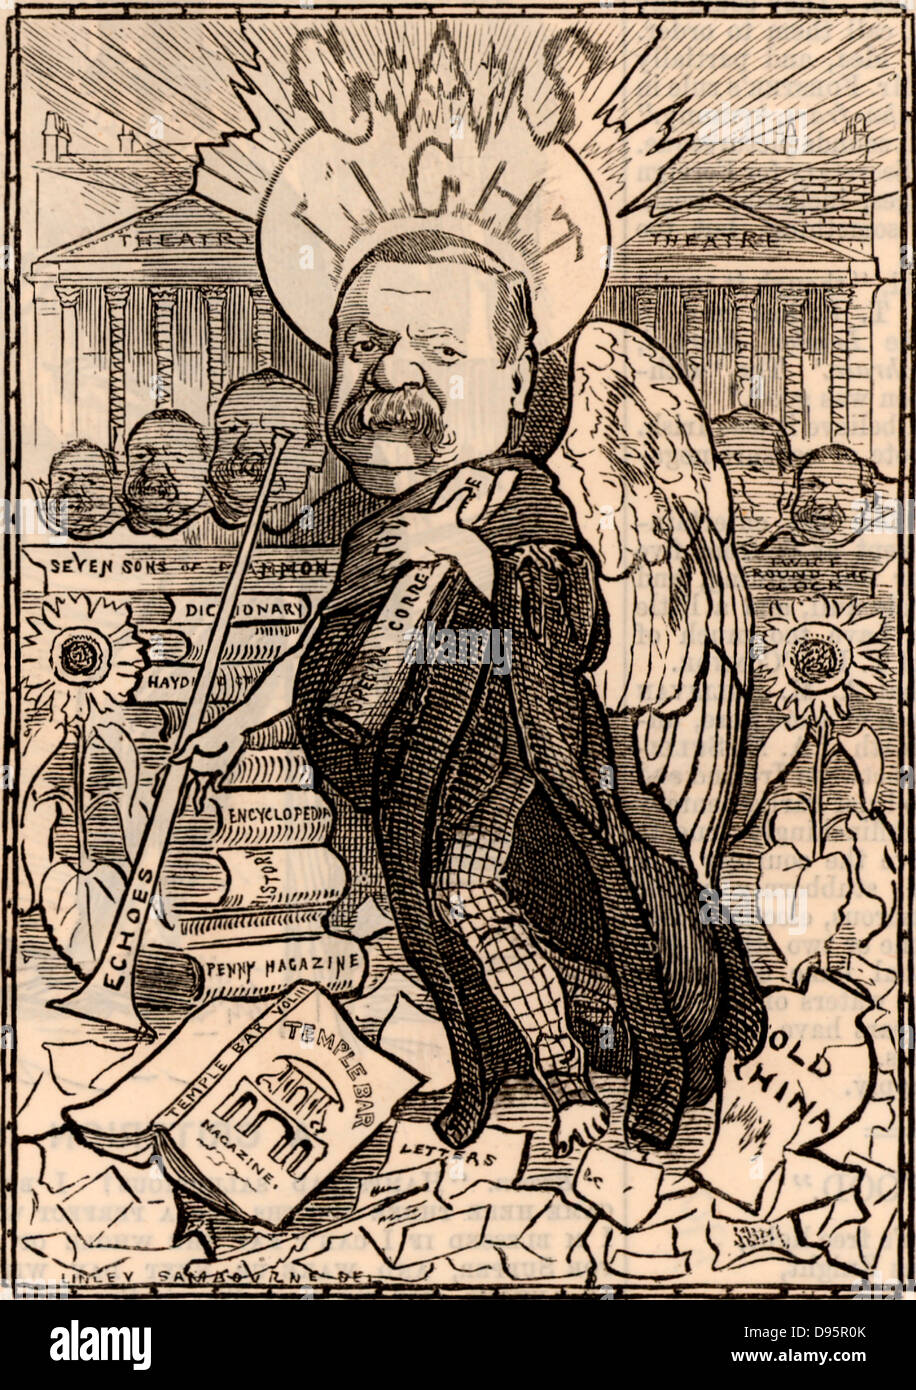 George Augustus Henry Sala (1828-1925), englischer Journalist, in London geboren. Cartoon von Edward Linley Sambourne in der Punch Fancy Porträts aus der Serie 'Lochen' (London, 27. August 1881). Stockfoto